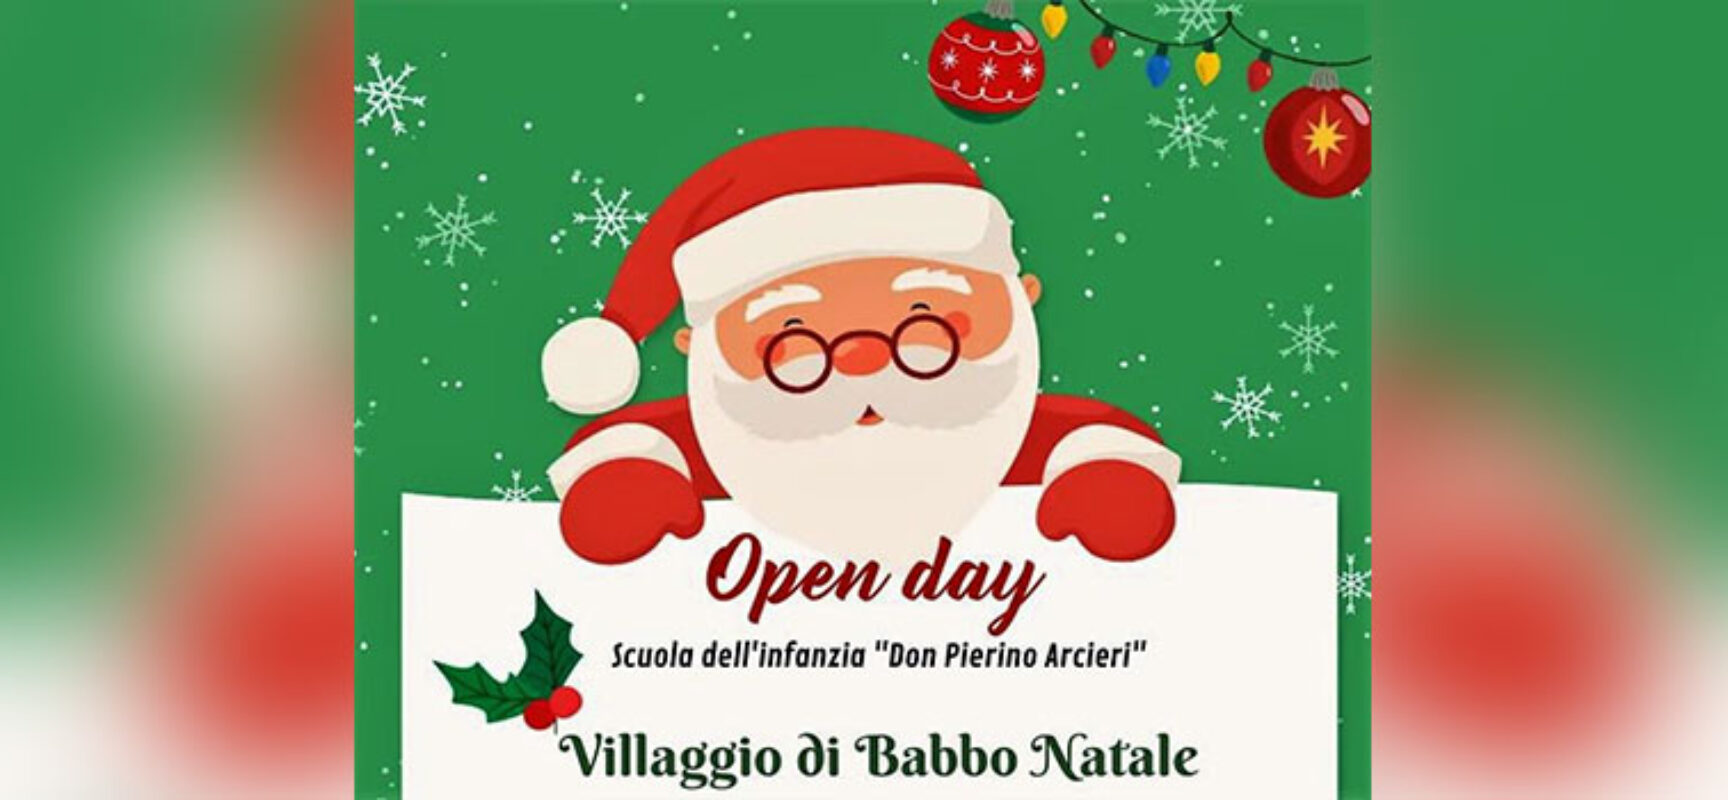 Oggi il Villaggio di Babbo Natale alla Scuola dell’infanzia “Don Pierino Arcieri” di Bisceglie